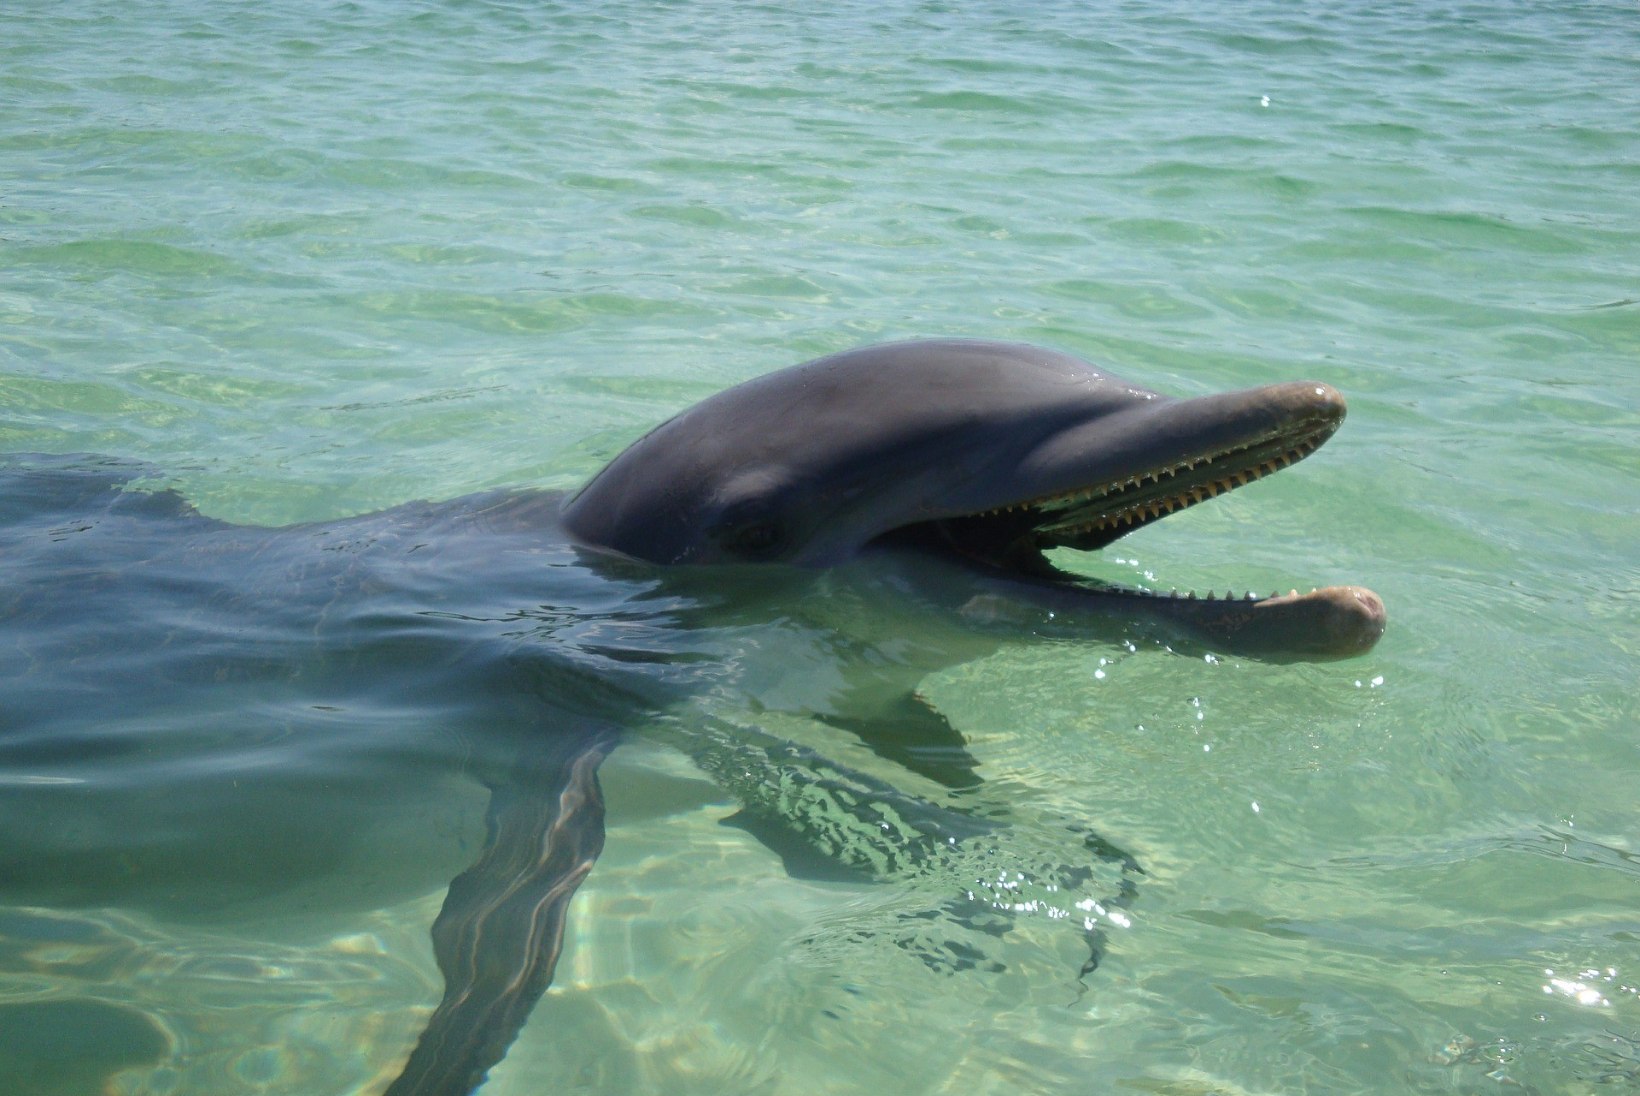 Tuhatkond delfiini elab rahumeeli prügijões